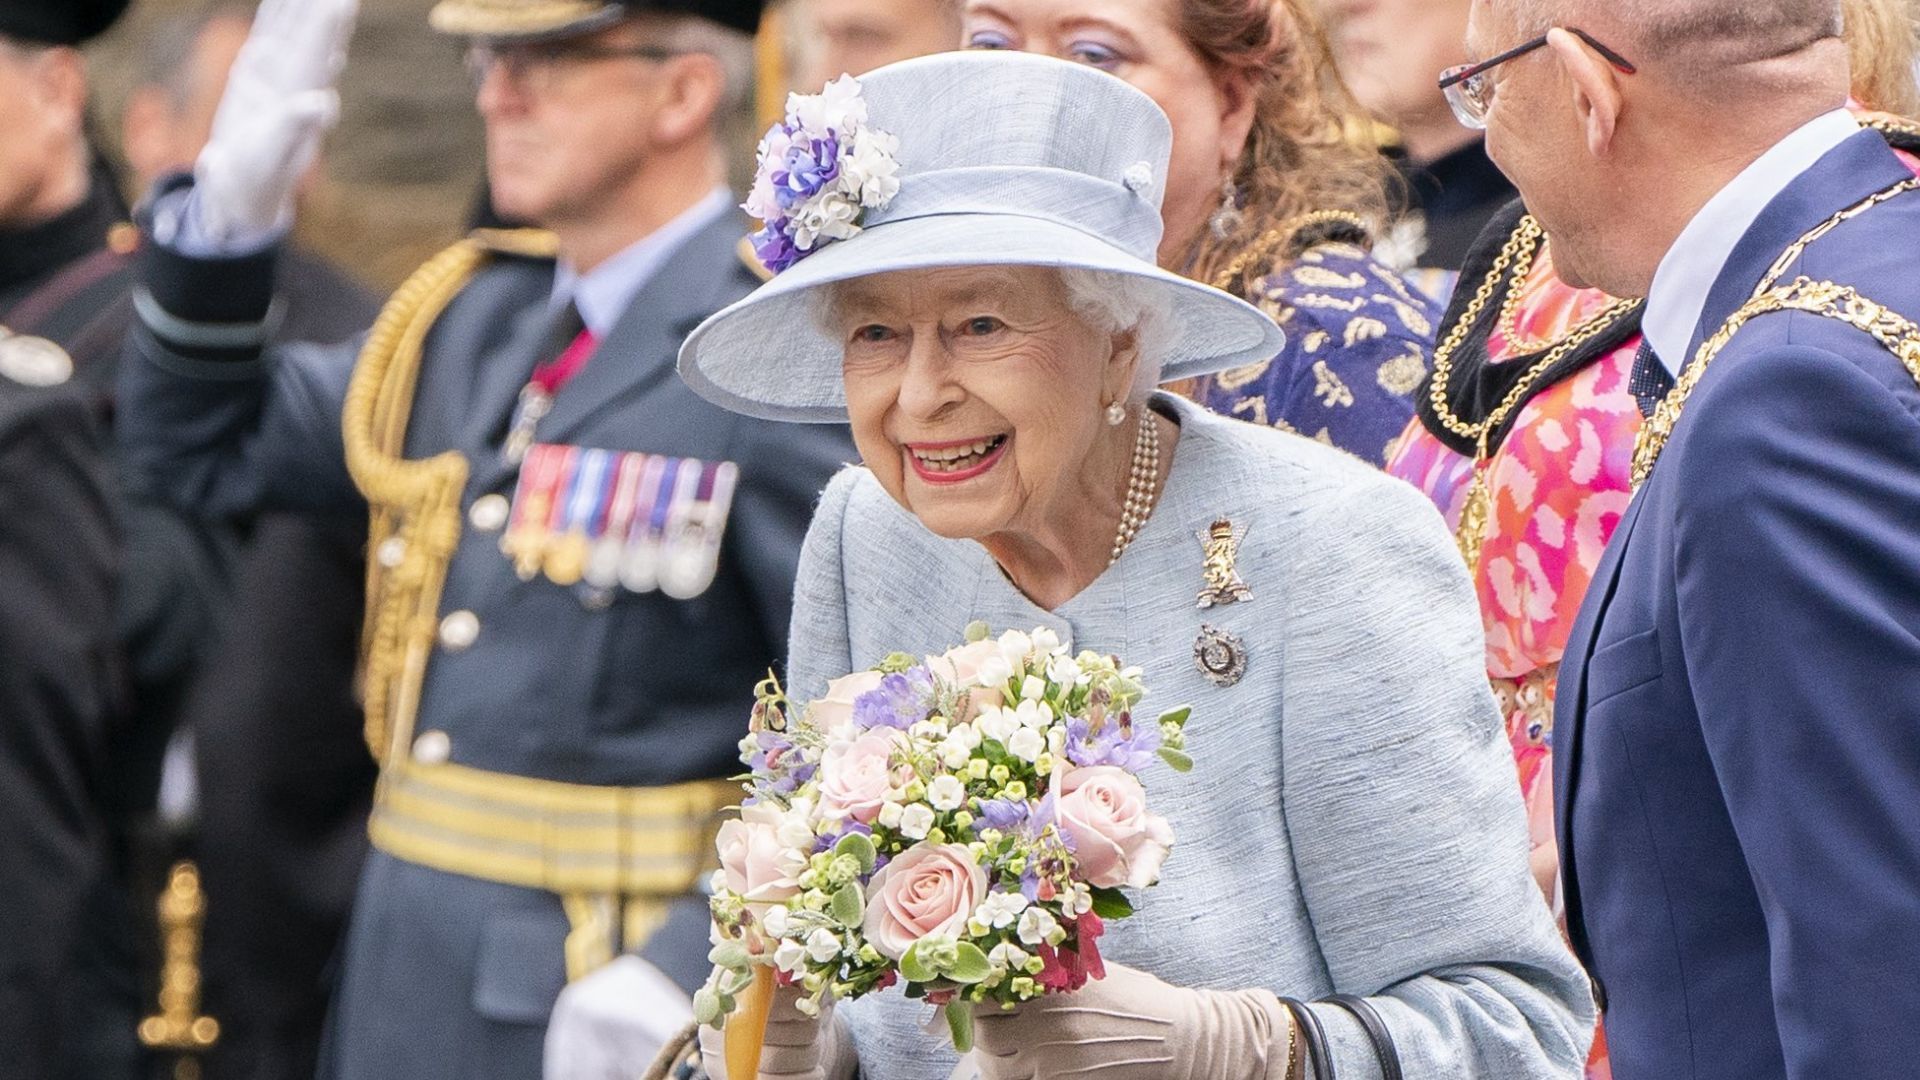 Royal family nicknames: Queen Elizabeth